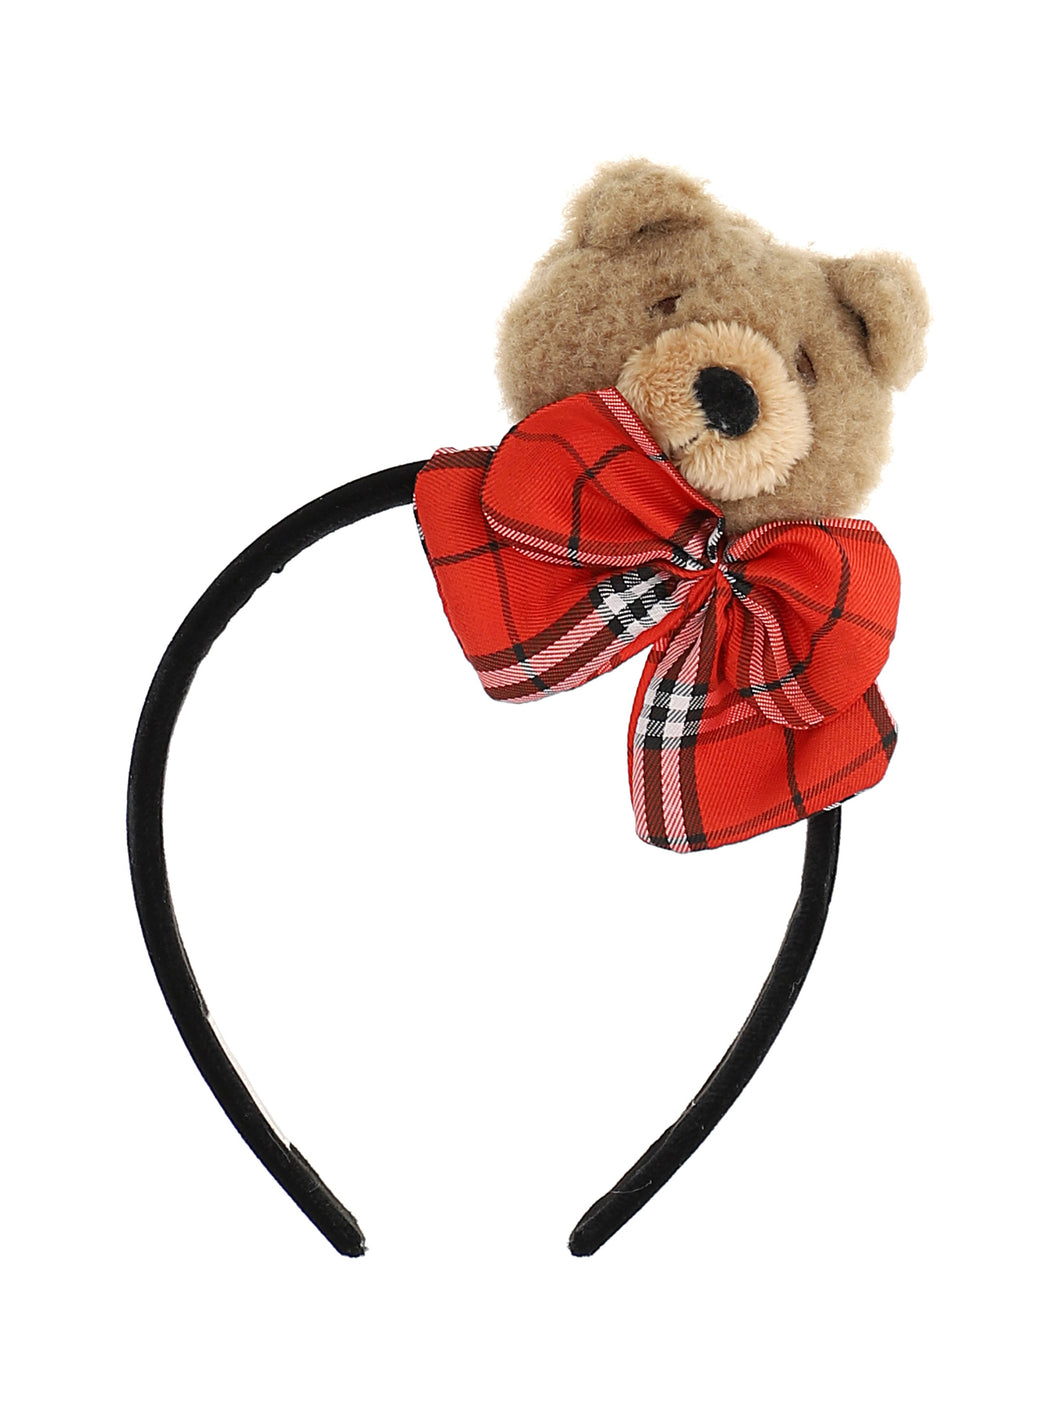 Teddy bear and bow hairband